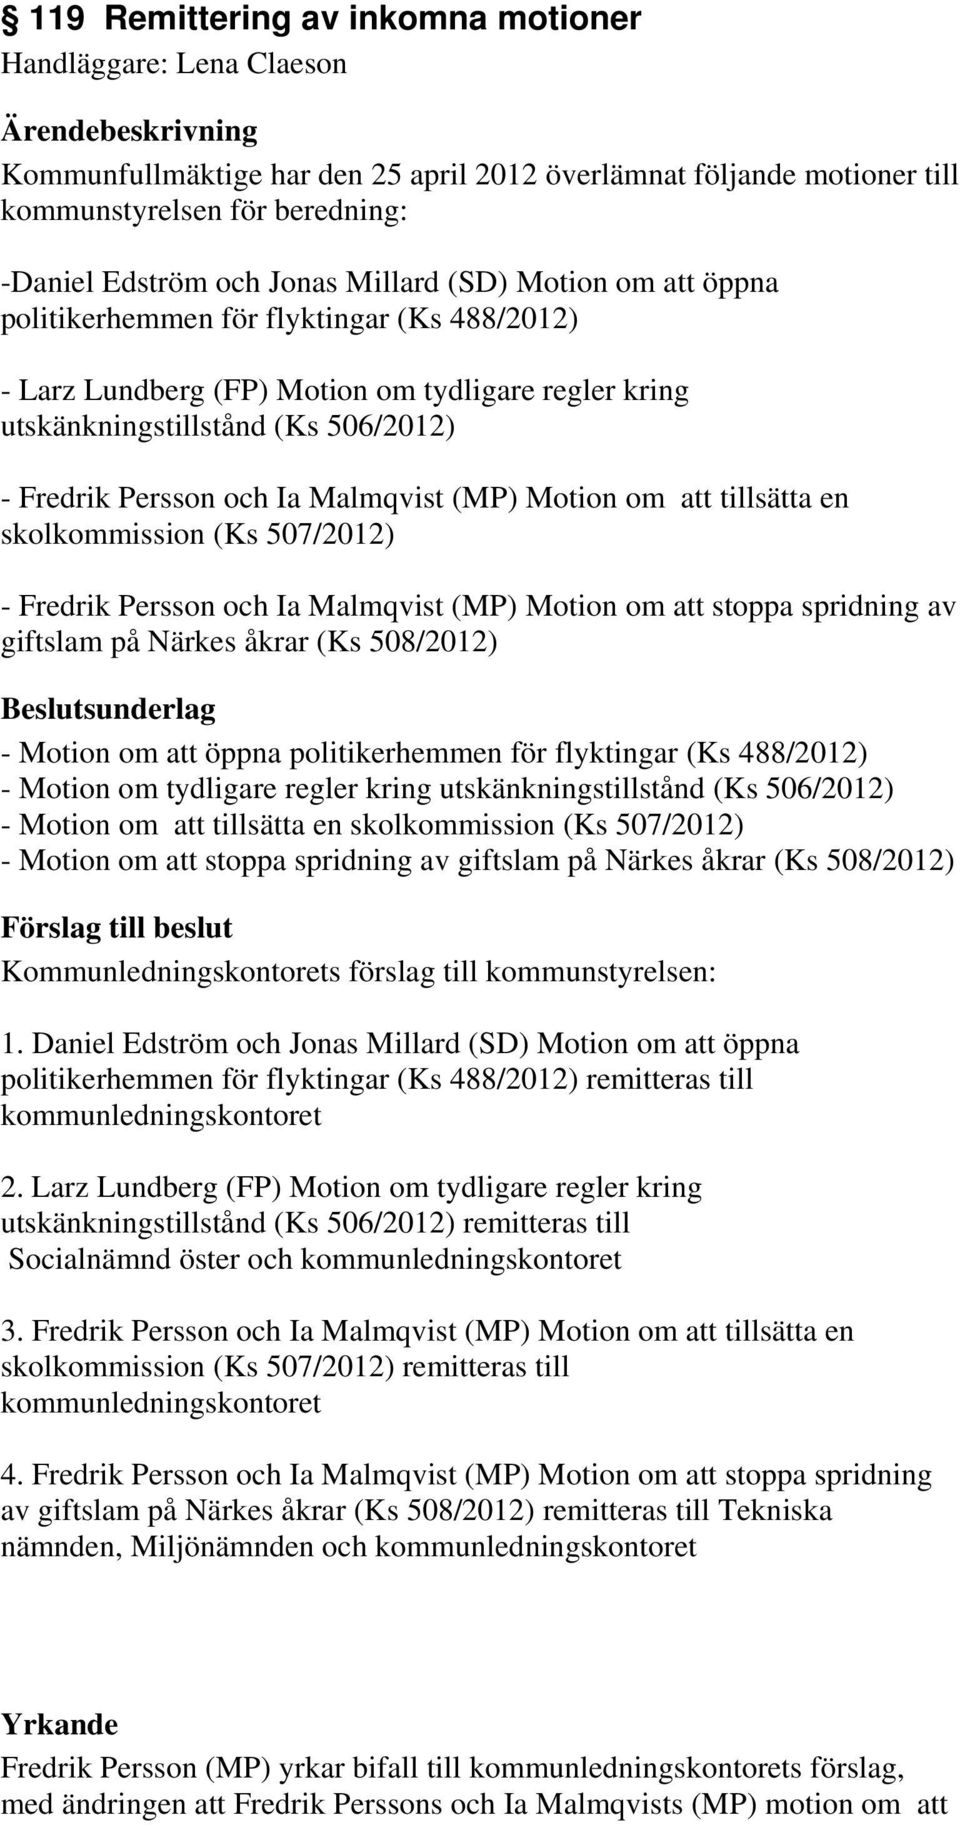 Malmqvist (MP) Motion om att tillsätta en skolkommission (Ks 507/2012) - Fredrik Persson och Ia Malmqvist (MP) Motion om att stoppa spridning av giftslam på Närkes åkrar (Ks 508/2012) - Motion om att